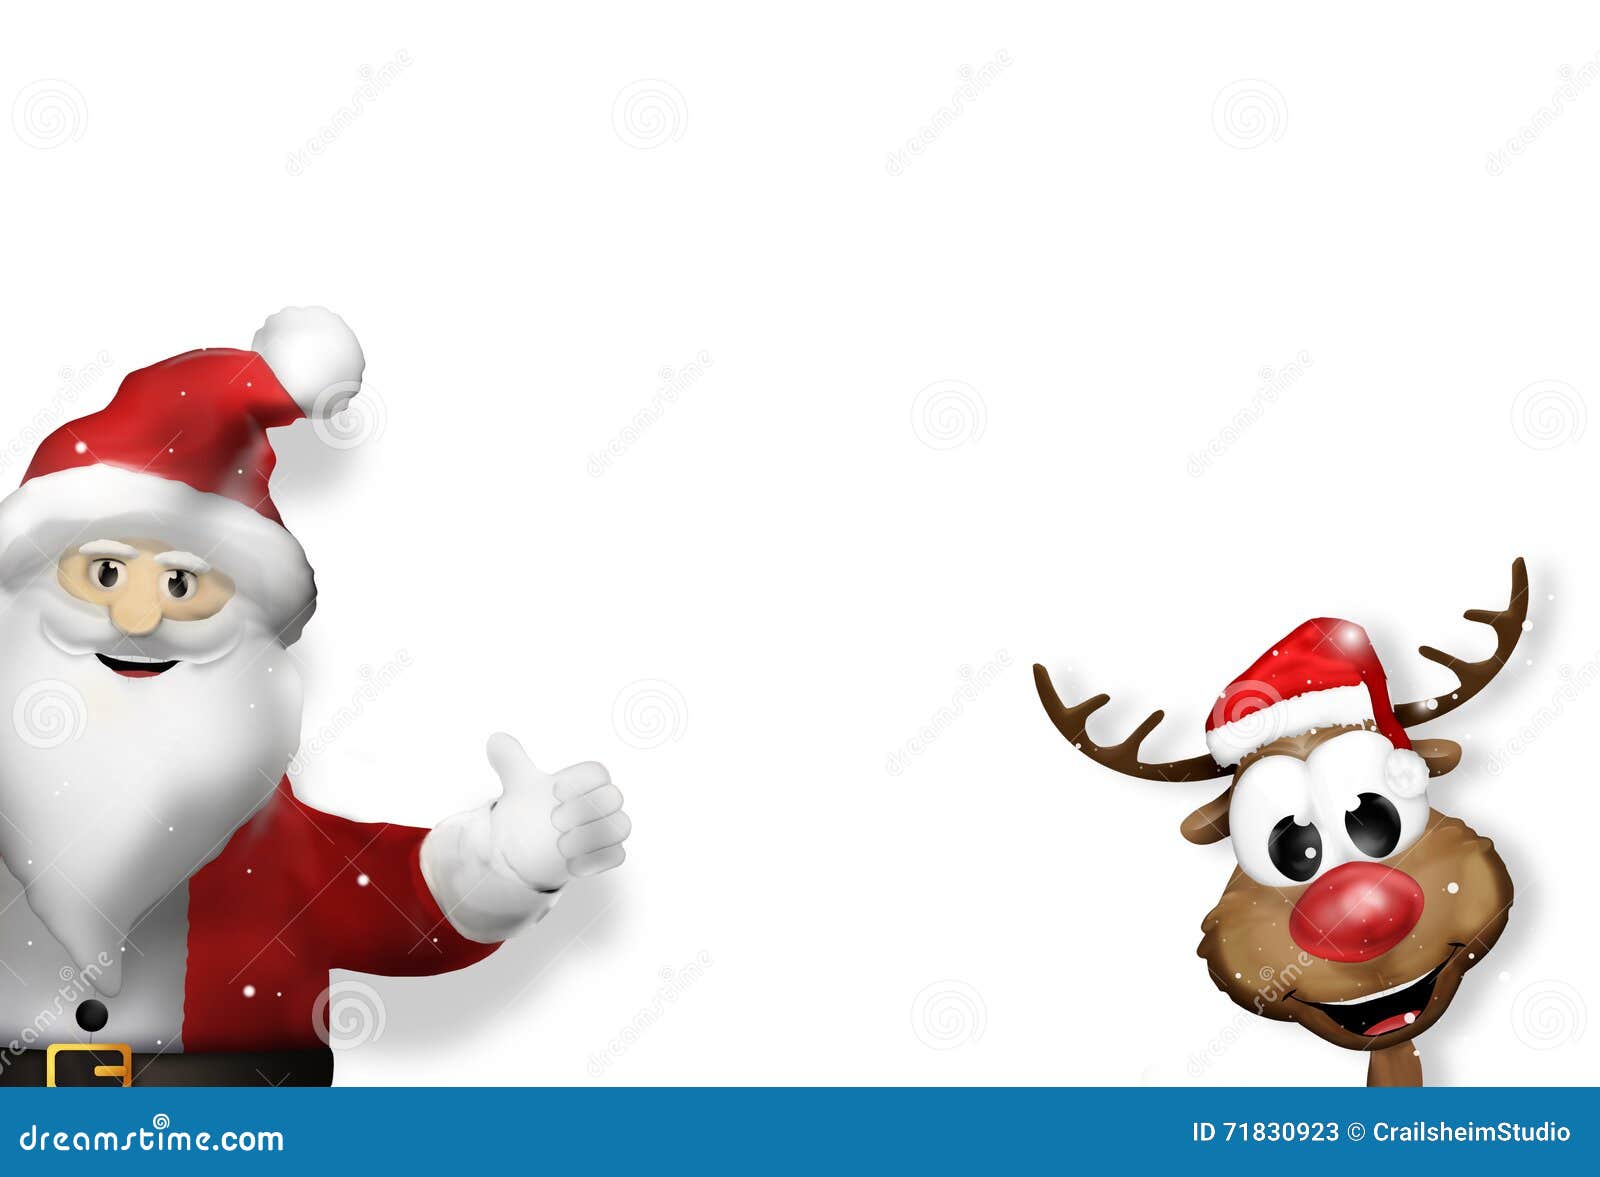 Babbo Natale 3d.Rosso D Angolo 3d Della Renna E Del Babbo Natale Illustrazione Di Stock Illustrazione Di Advertise Claus 71830923